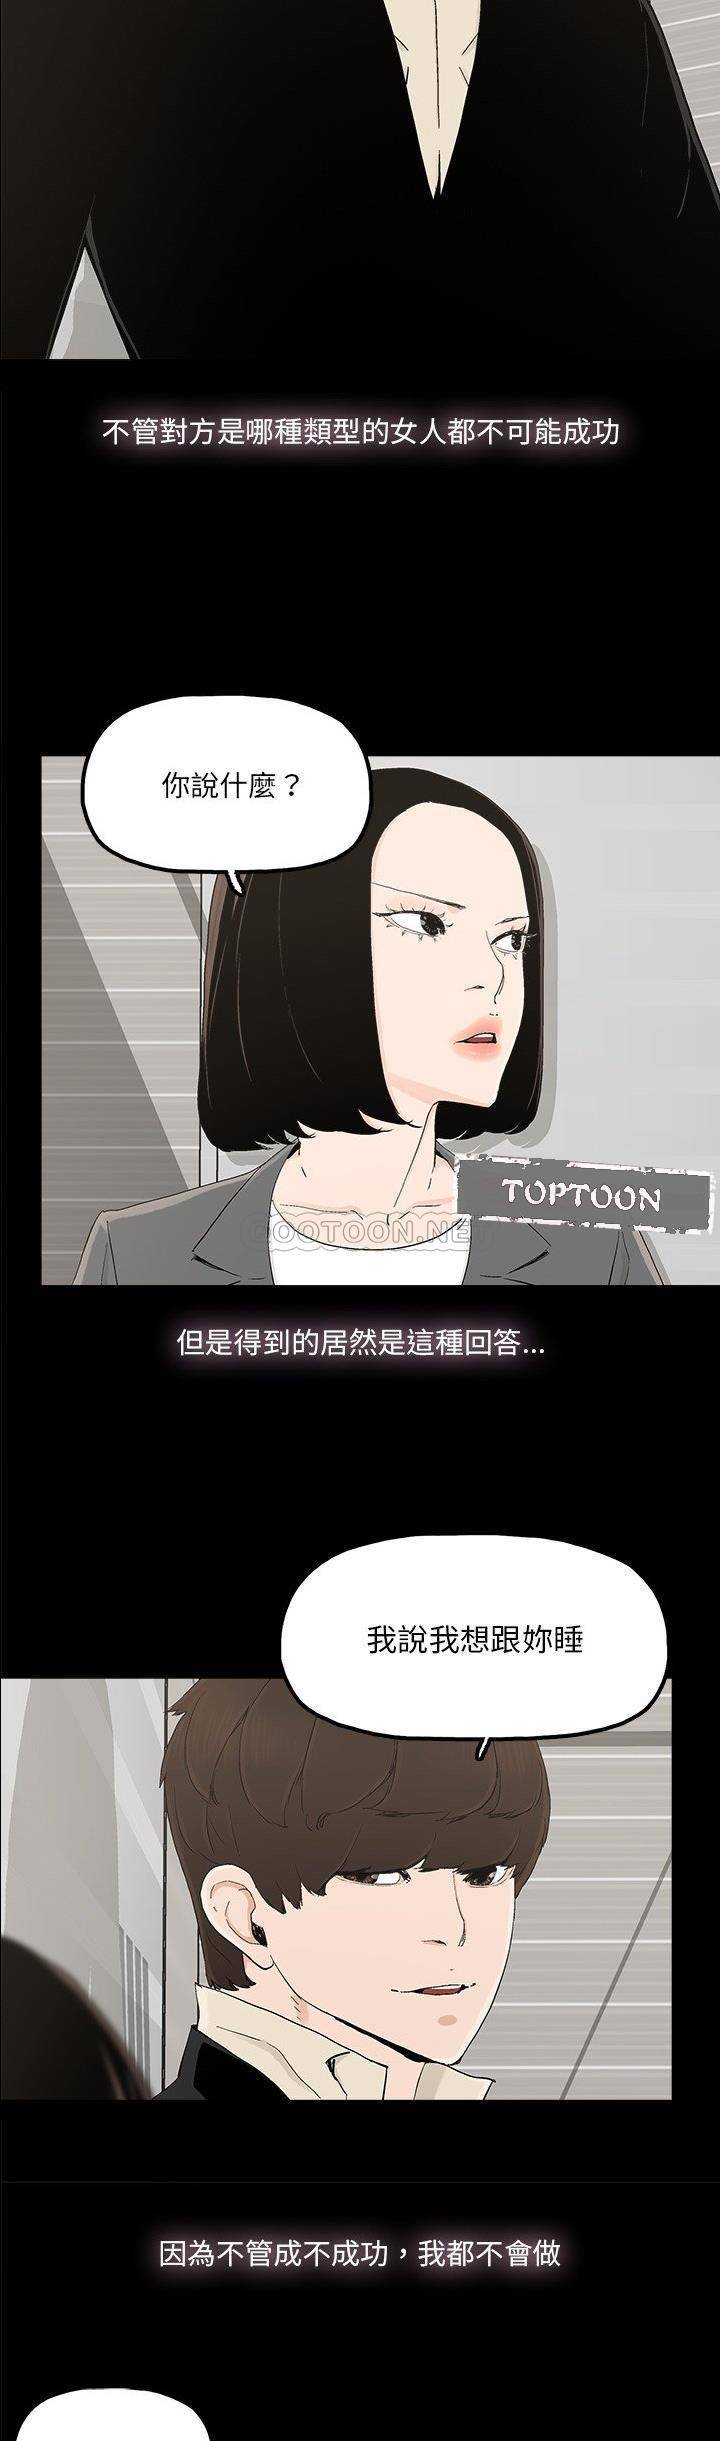 韩国污漫画 幸福 第28话 18